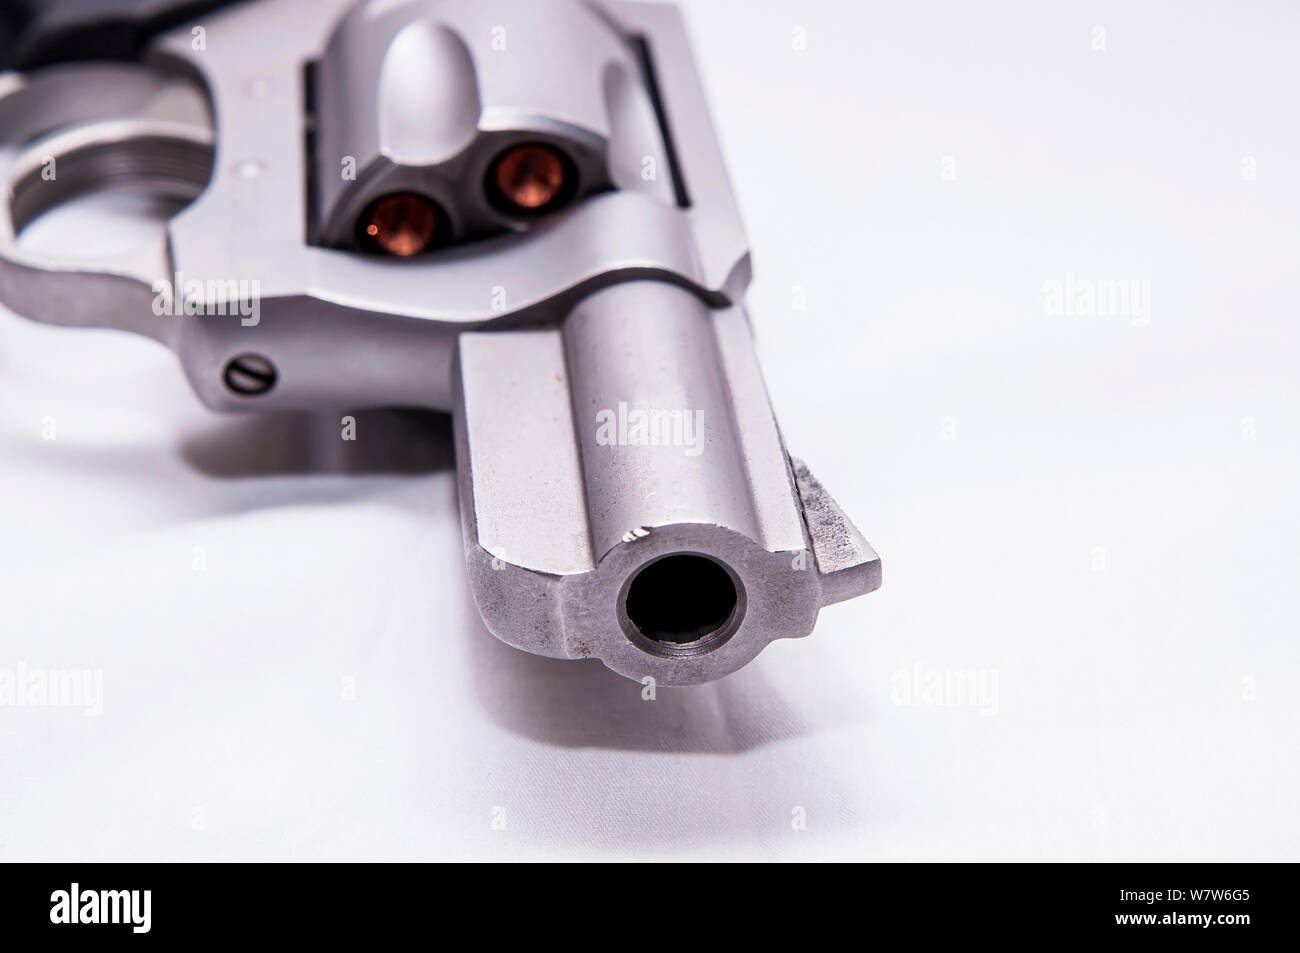 A357 Magnum snub gerochene Revolver mit hohlen Punkt Kugeln auf einem weißen Hintergrund geladen Stockfoto